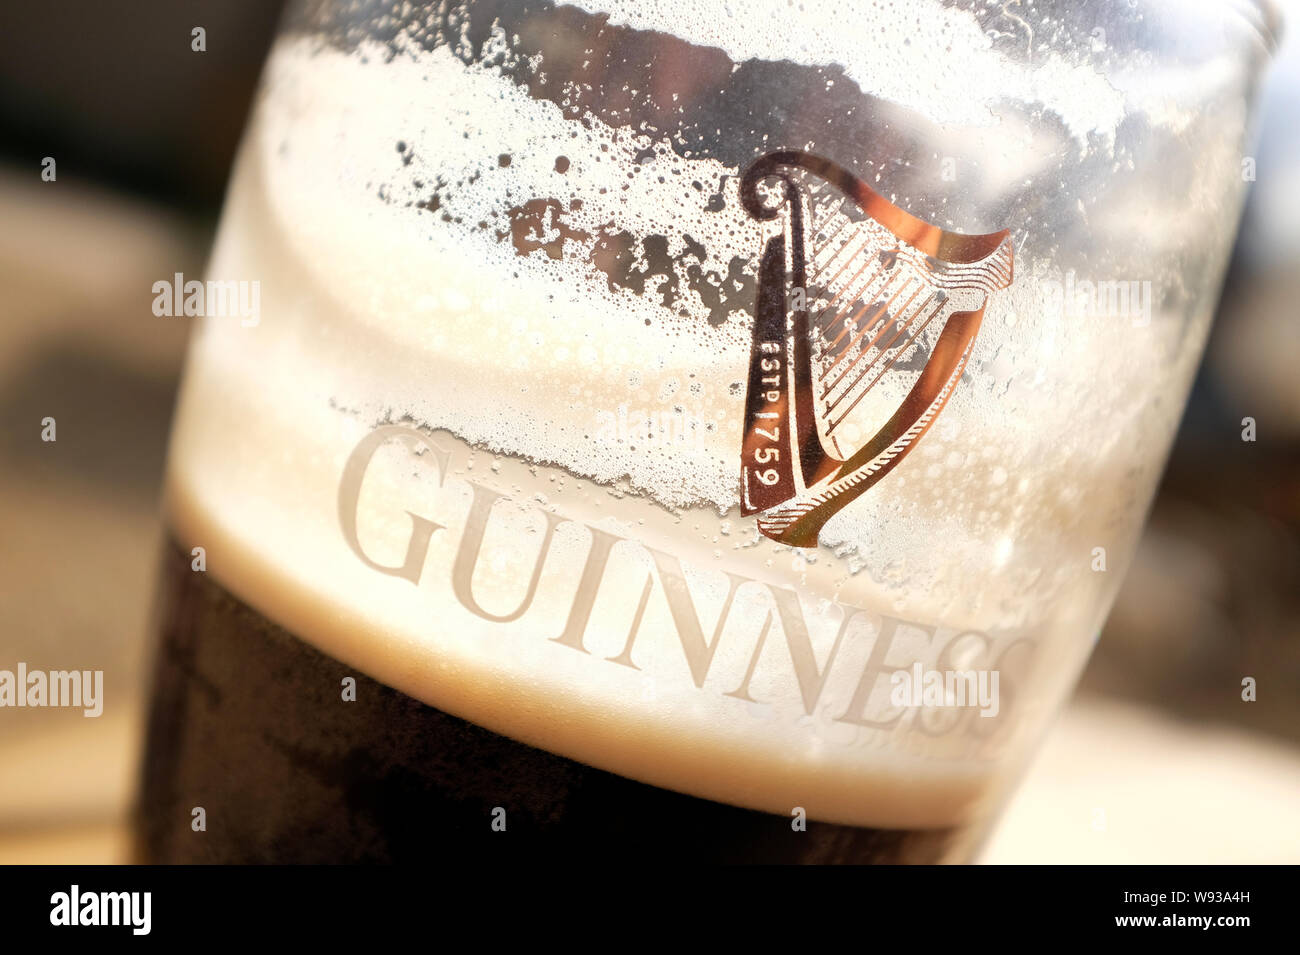 guinness logo on pint glass Stock Photo